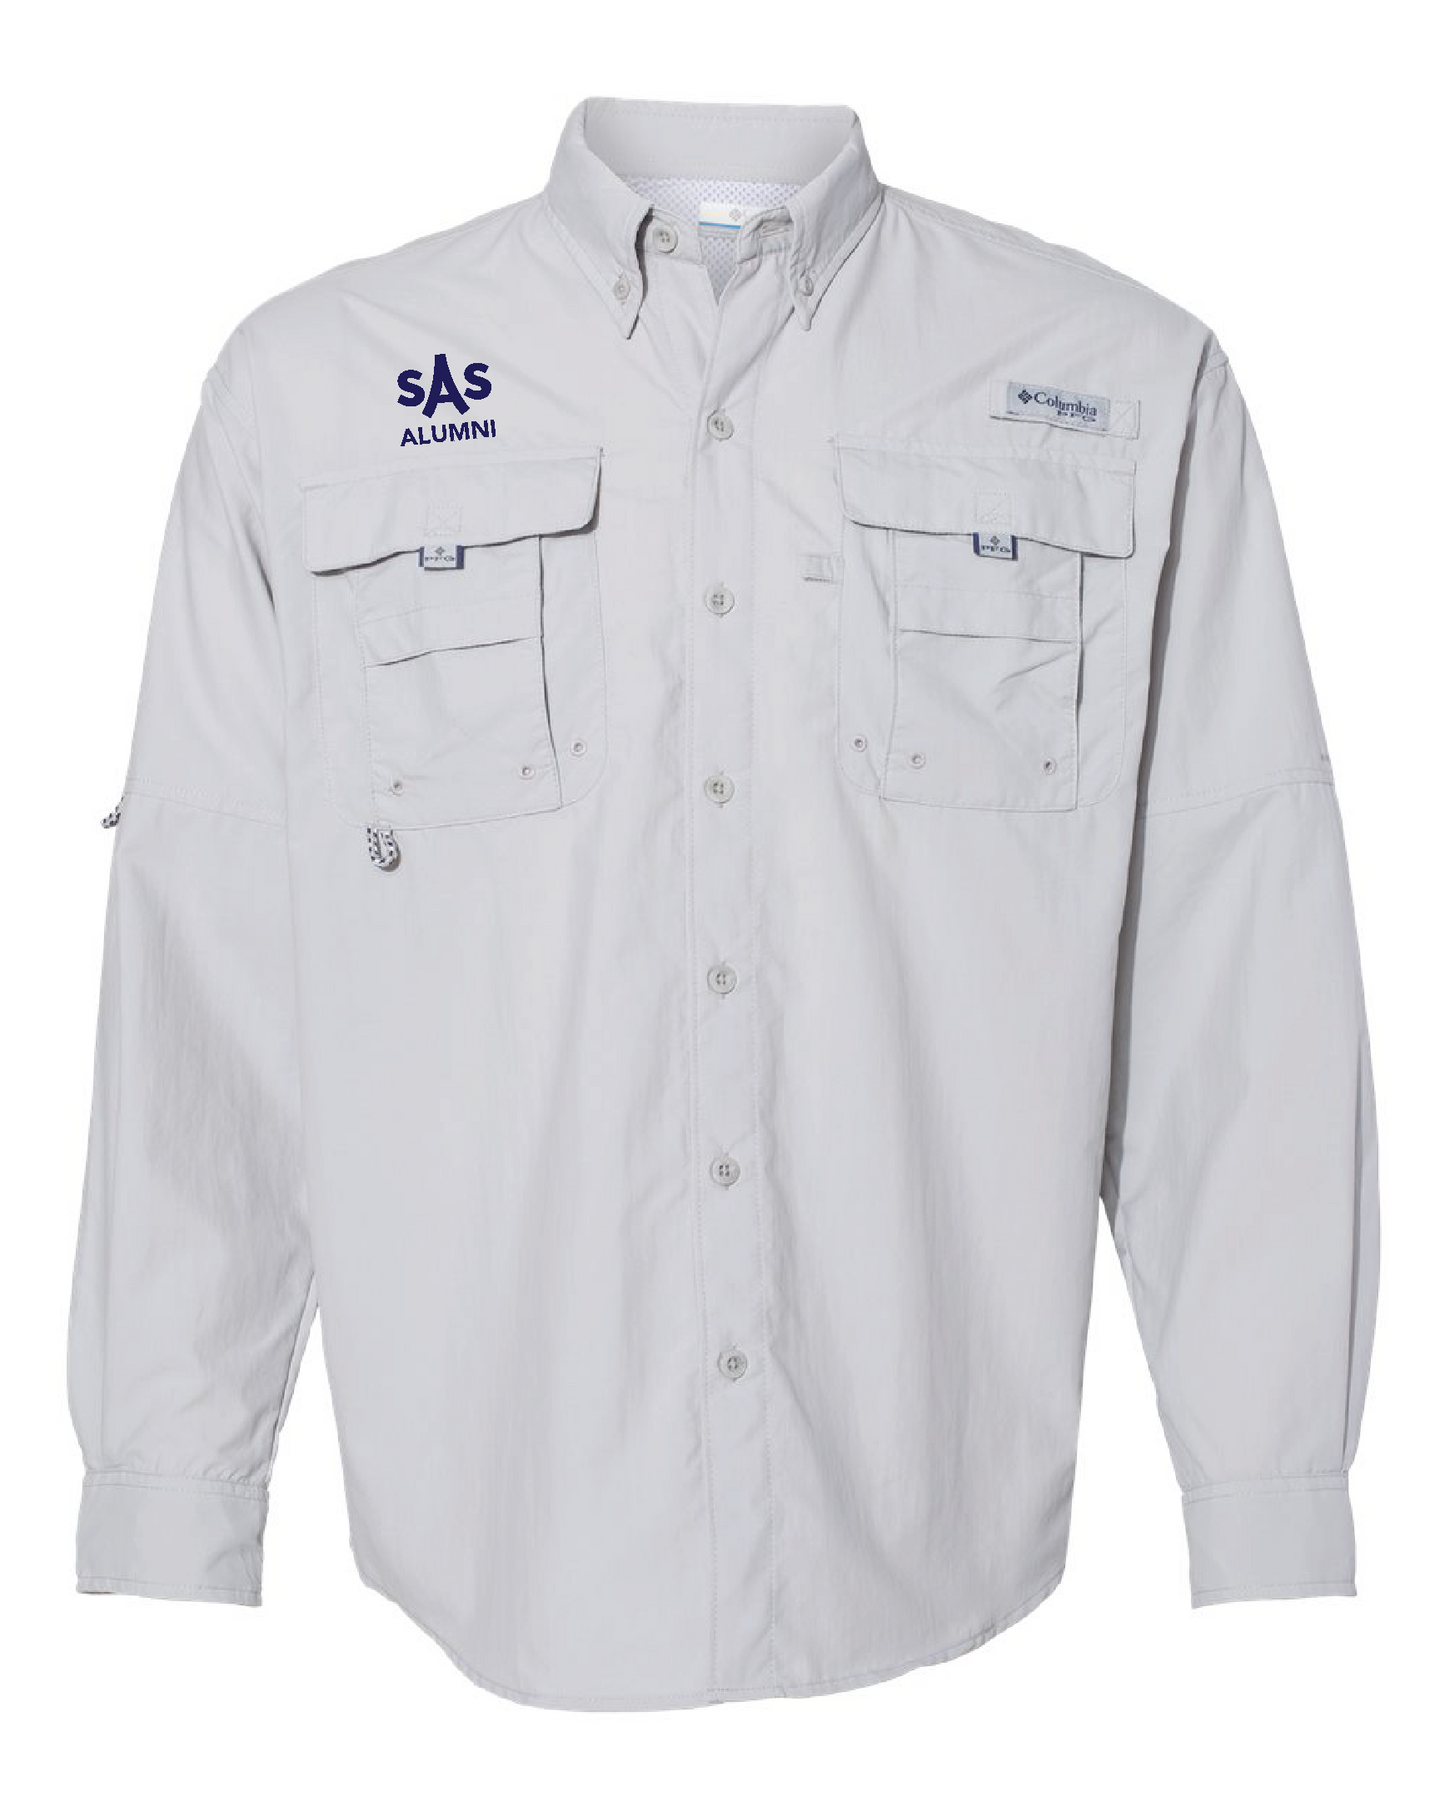 Columbia PFG Bahama™ II Long Sleeve Shirt (Mens/Unisex)